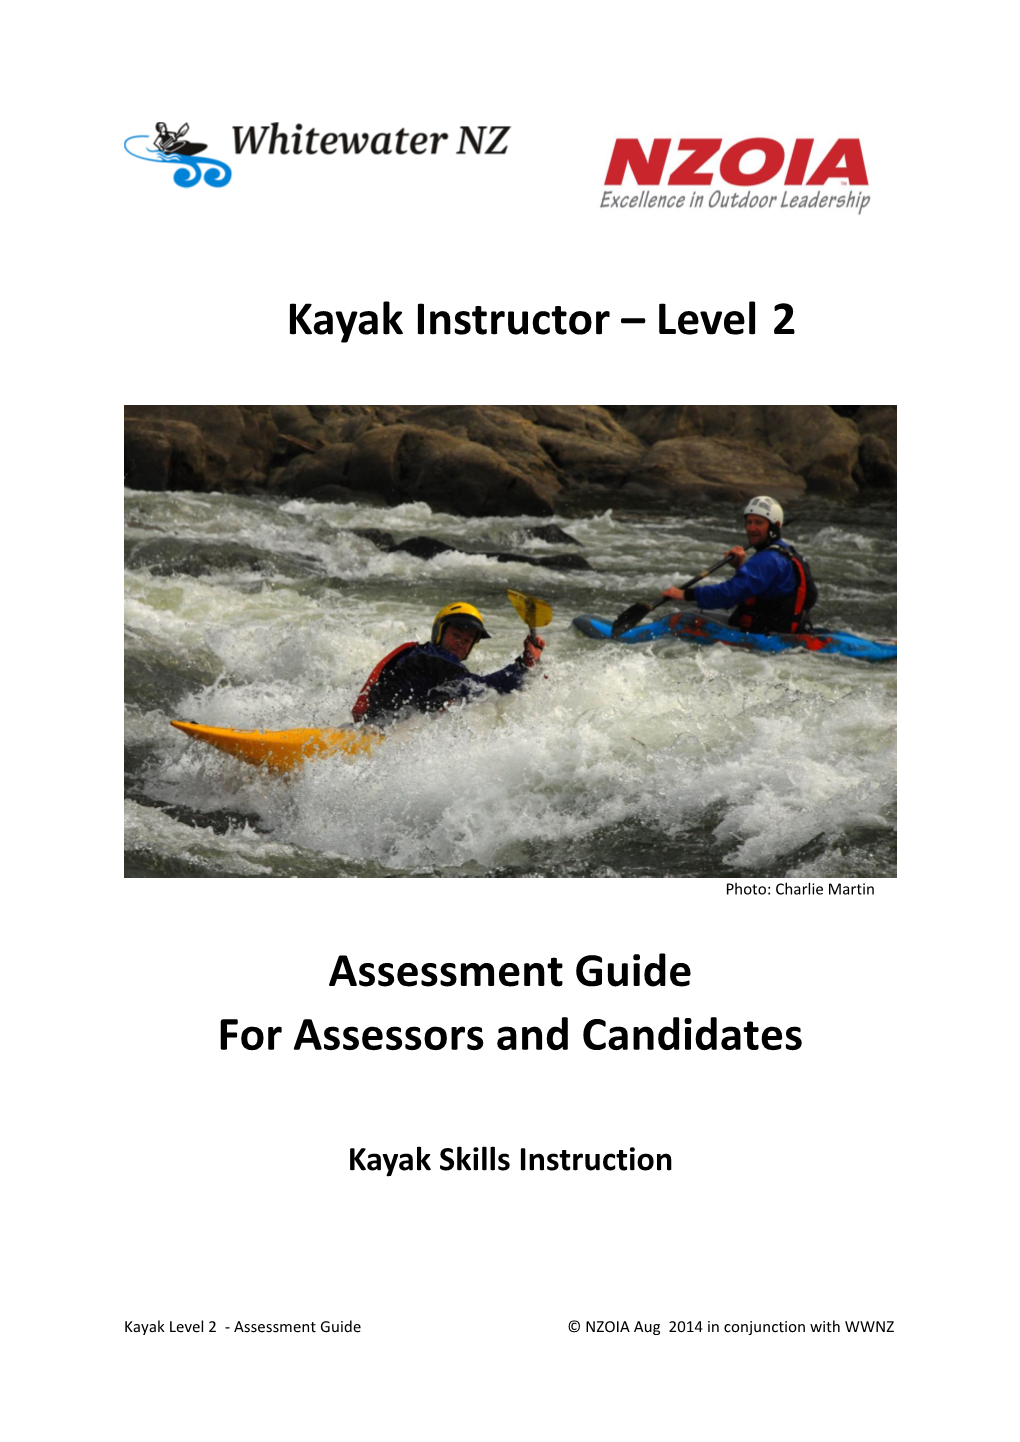 Kayak 2 Assessment Guide